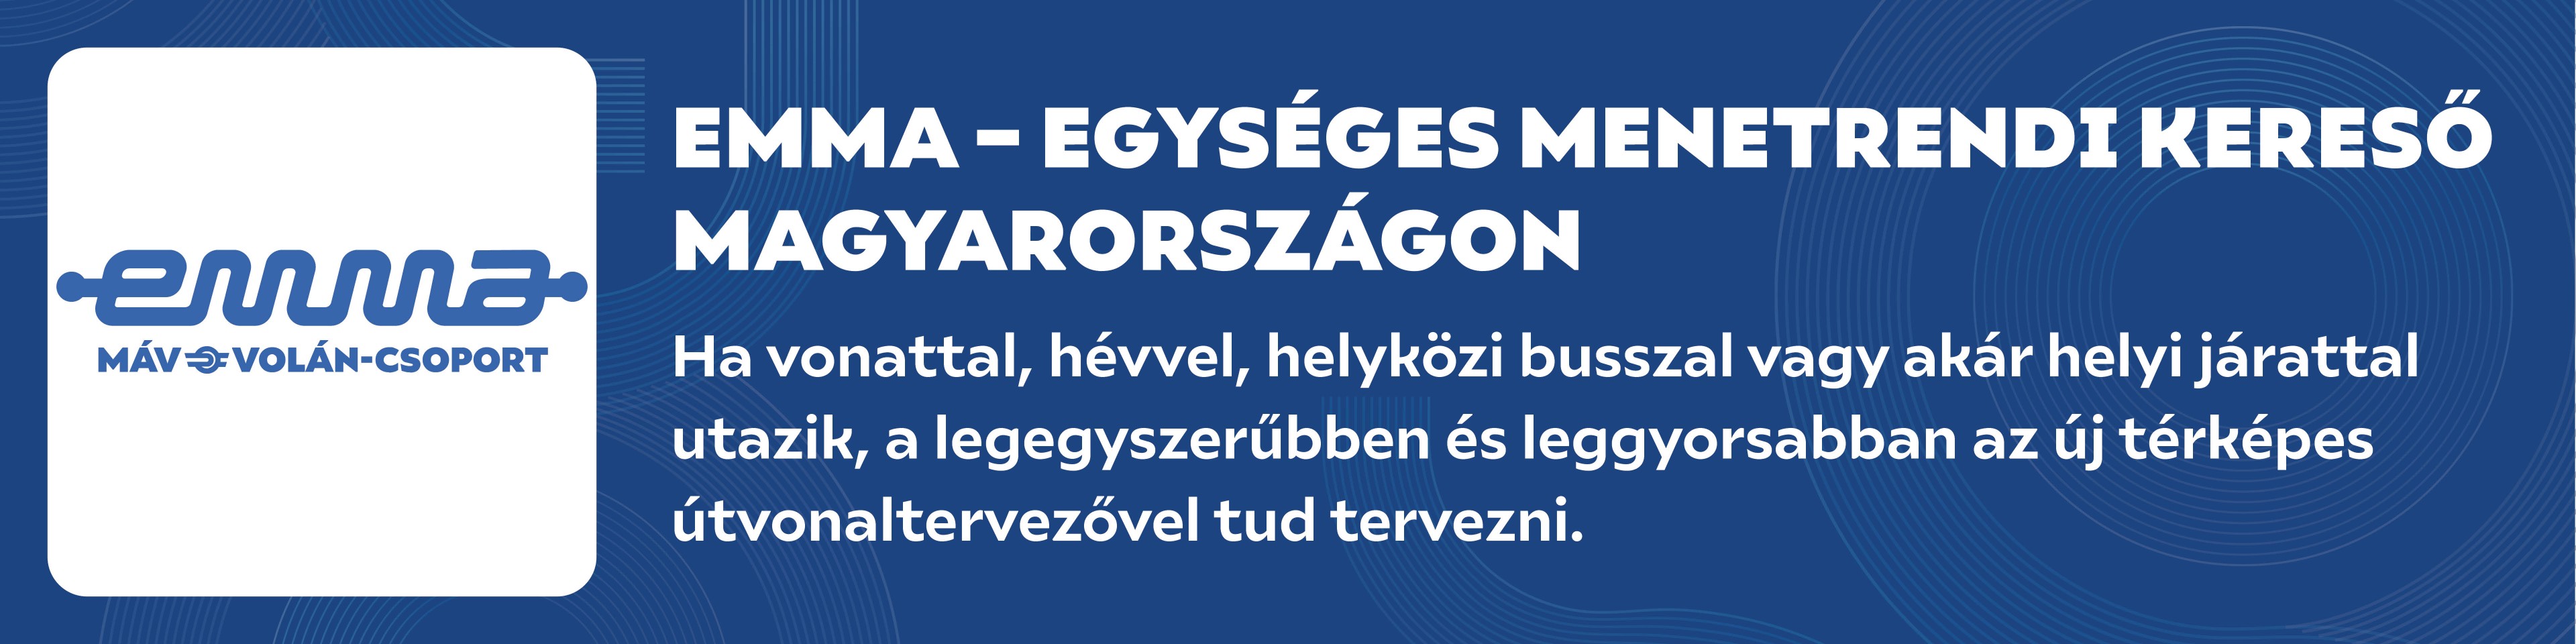 EMMA Egységes Menetrendi kereső Magyarországon - Ha vonattal, hévvel, helyközi busszal vagy akár helyi járattal utazik, a legegyszerűbben és leggyorsabban az új térképes útvonaltervezővel tud tervezni.